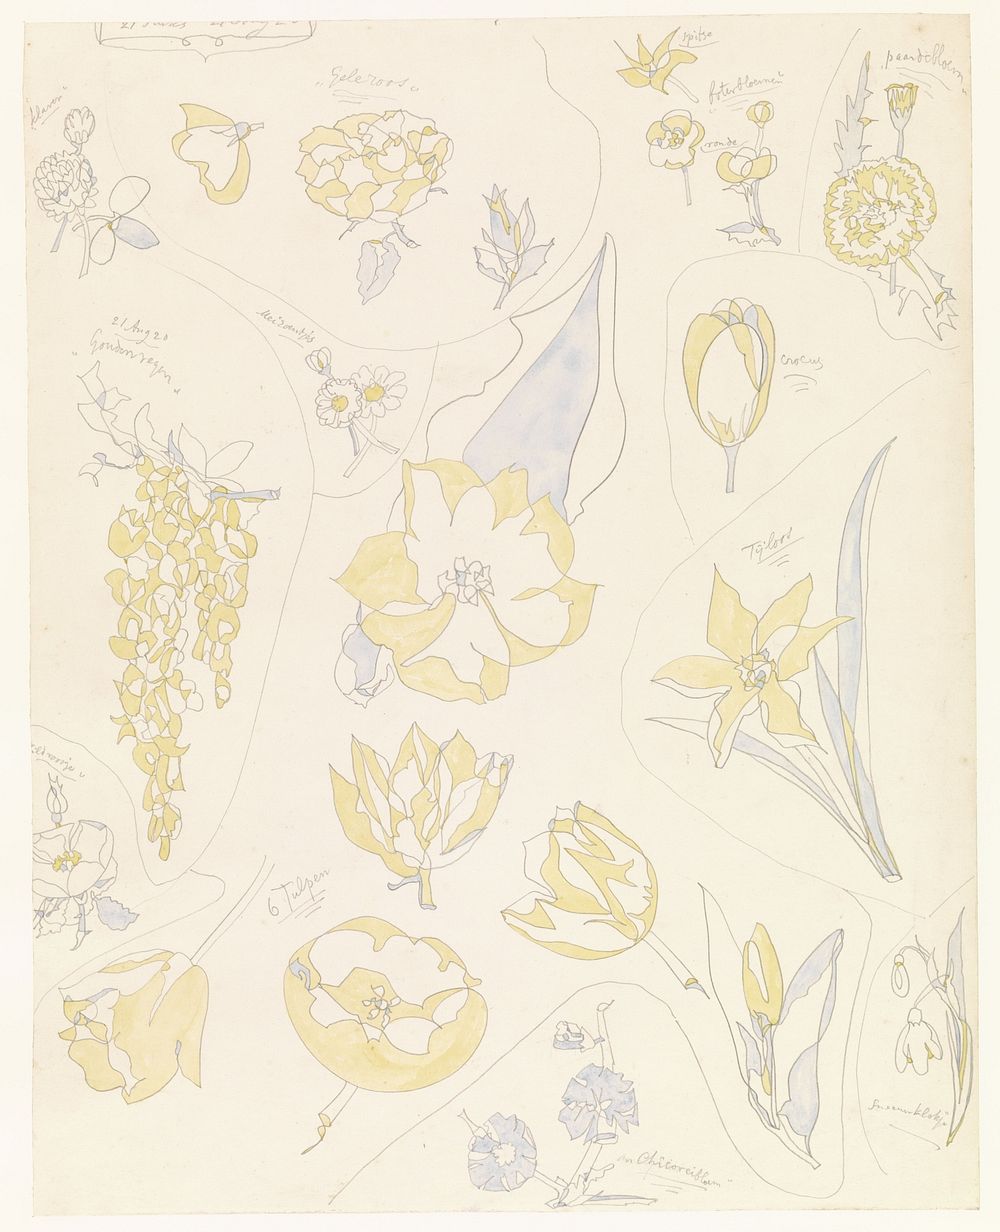 Ontwerpen voor aardewerkdecoratie: zes tulpen en andere bloemen (1920) by Theo Colenbrander